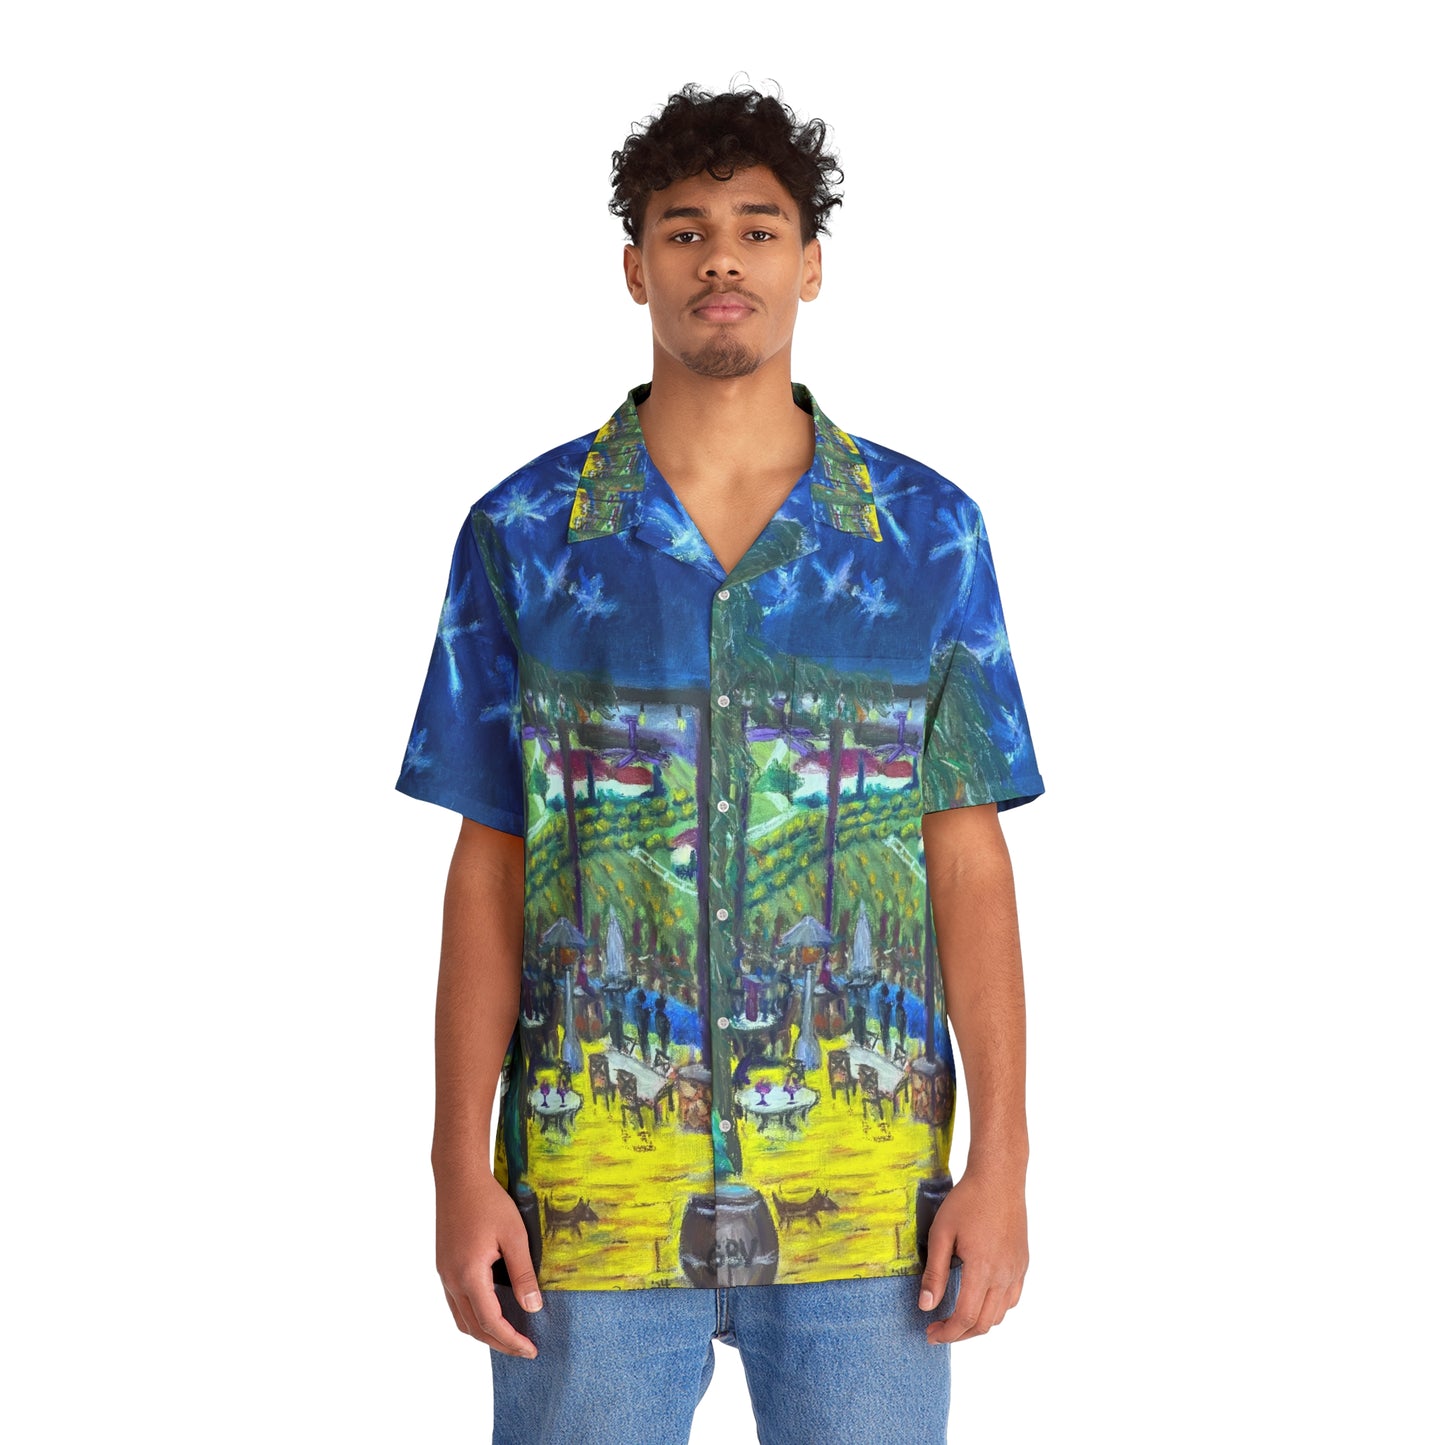 Crepúsculo en Temecula GBV camisa hawaiana para hombre